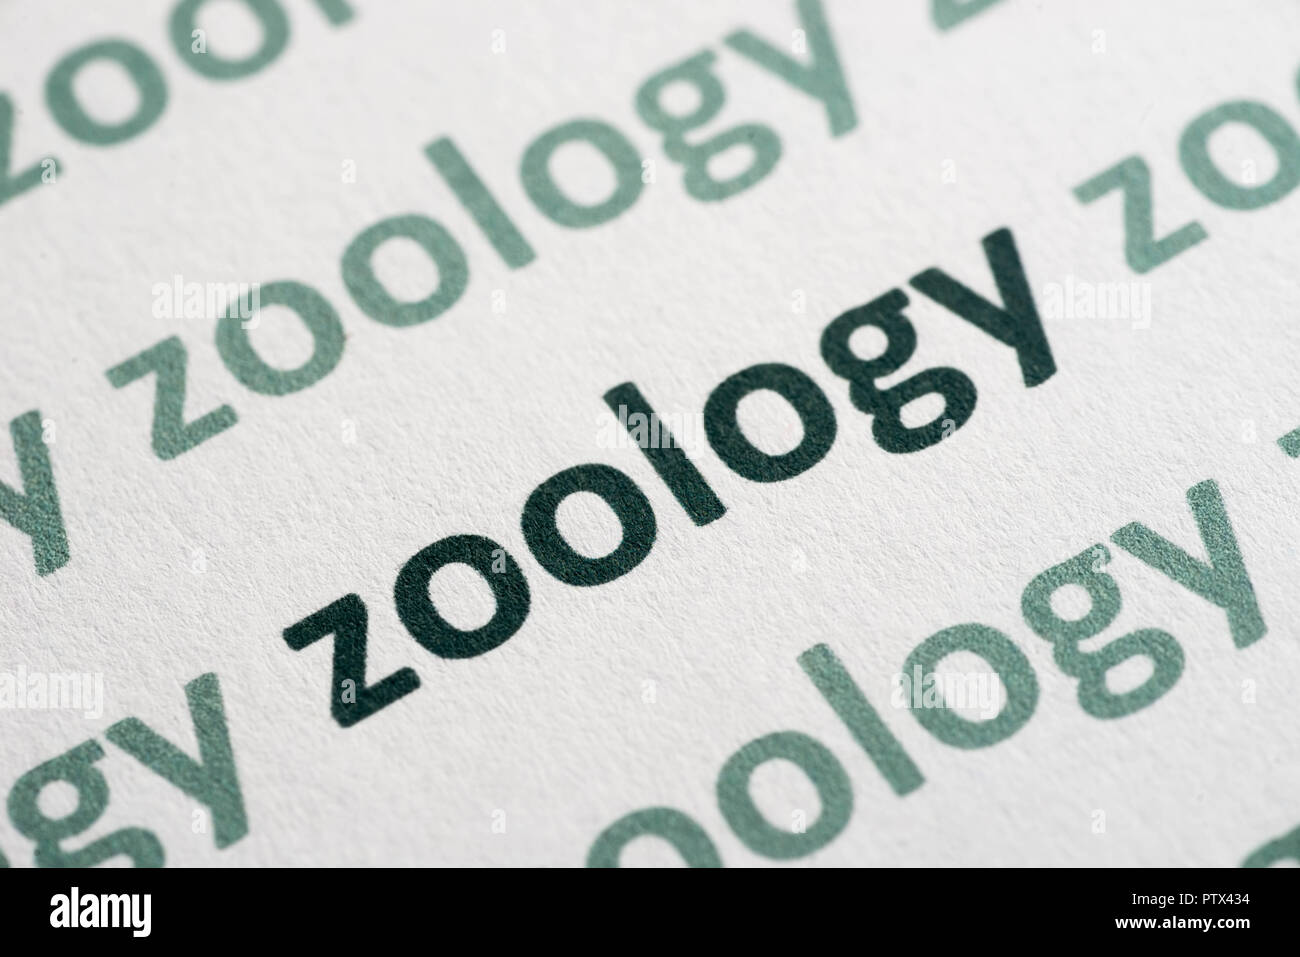 Wort Zoologie auf weißem Papier Makro gedruckt Stockfoto